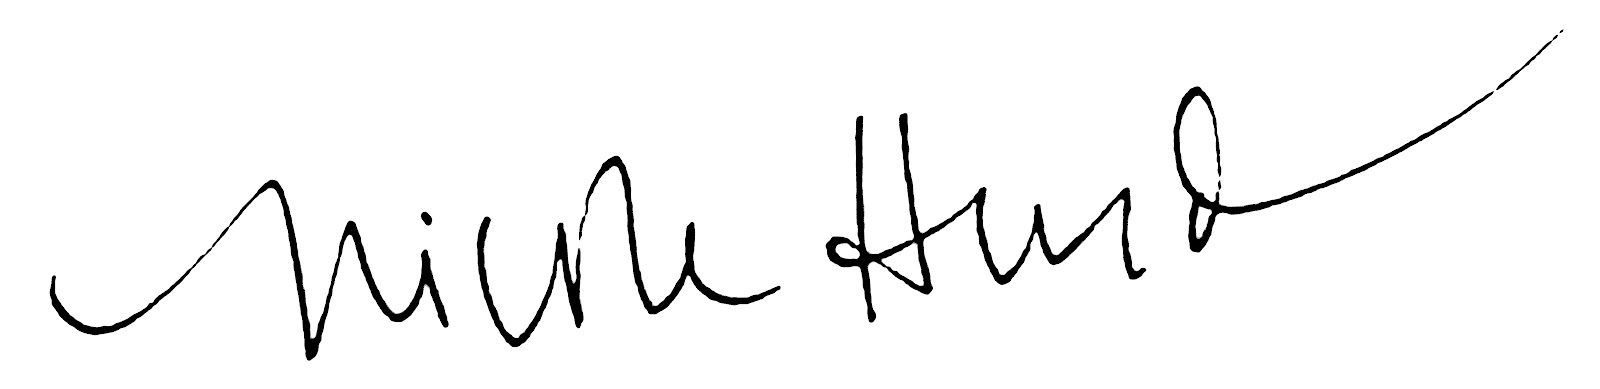 Nicole Hurd signature